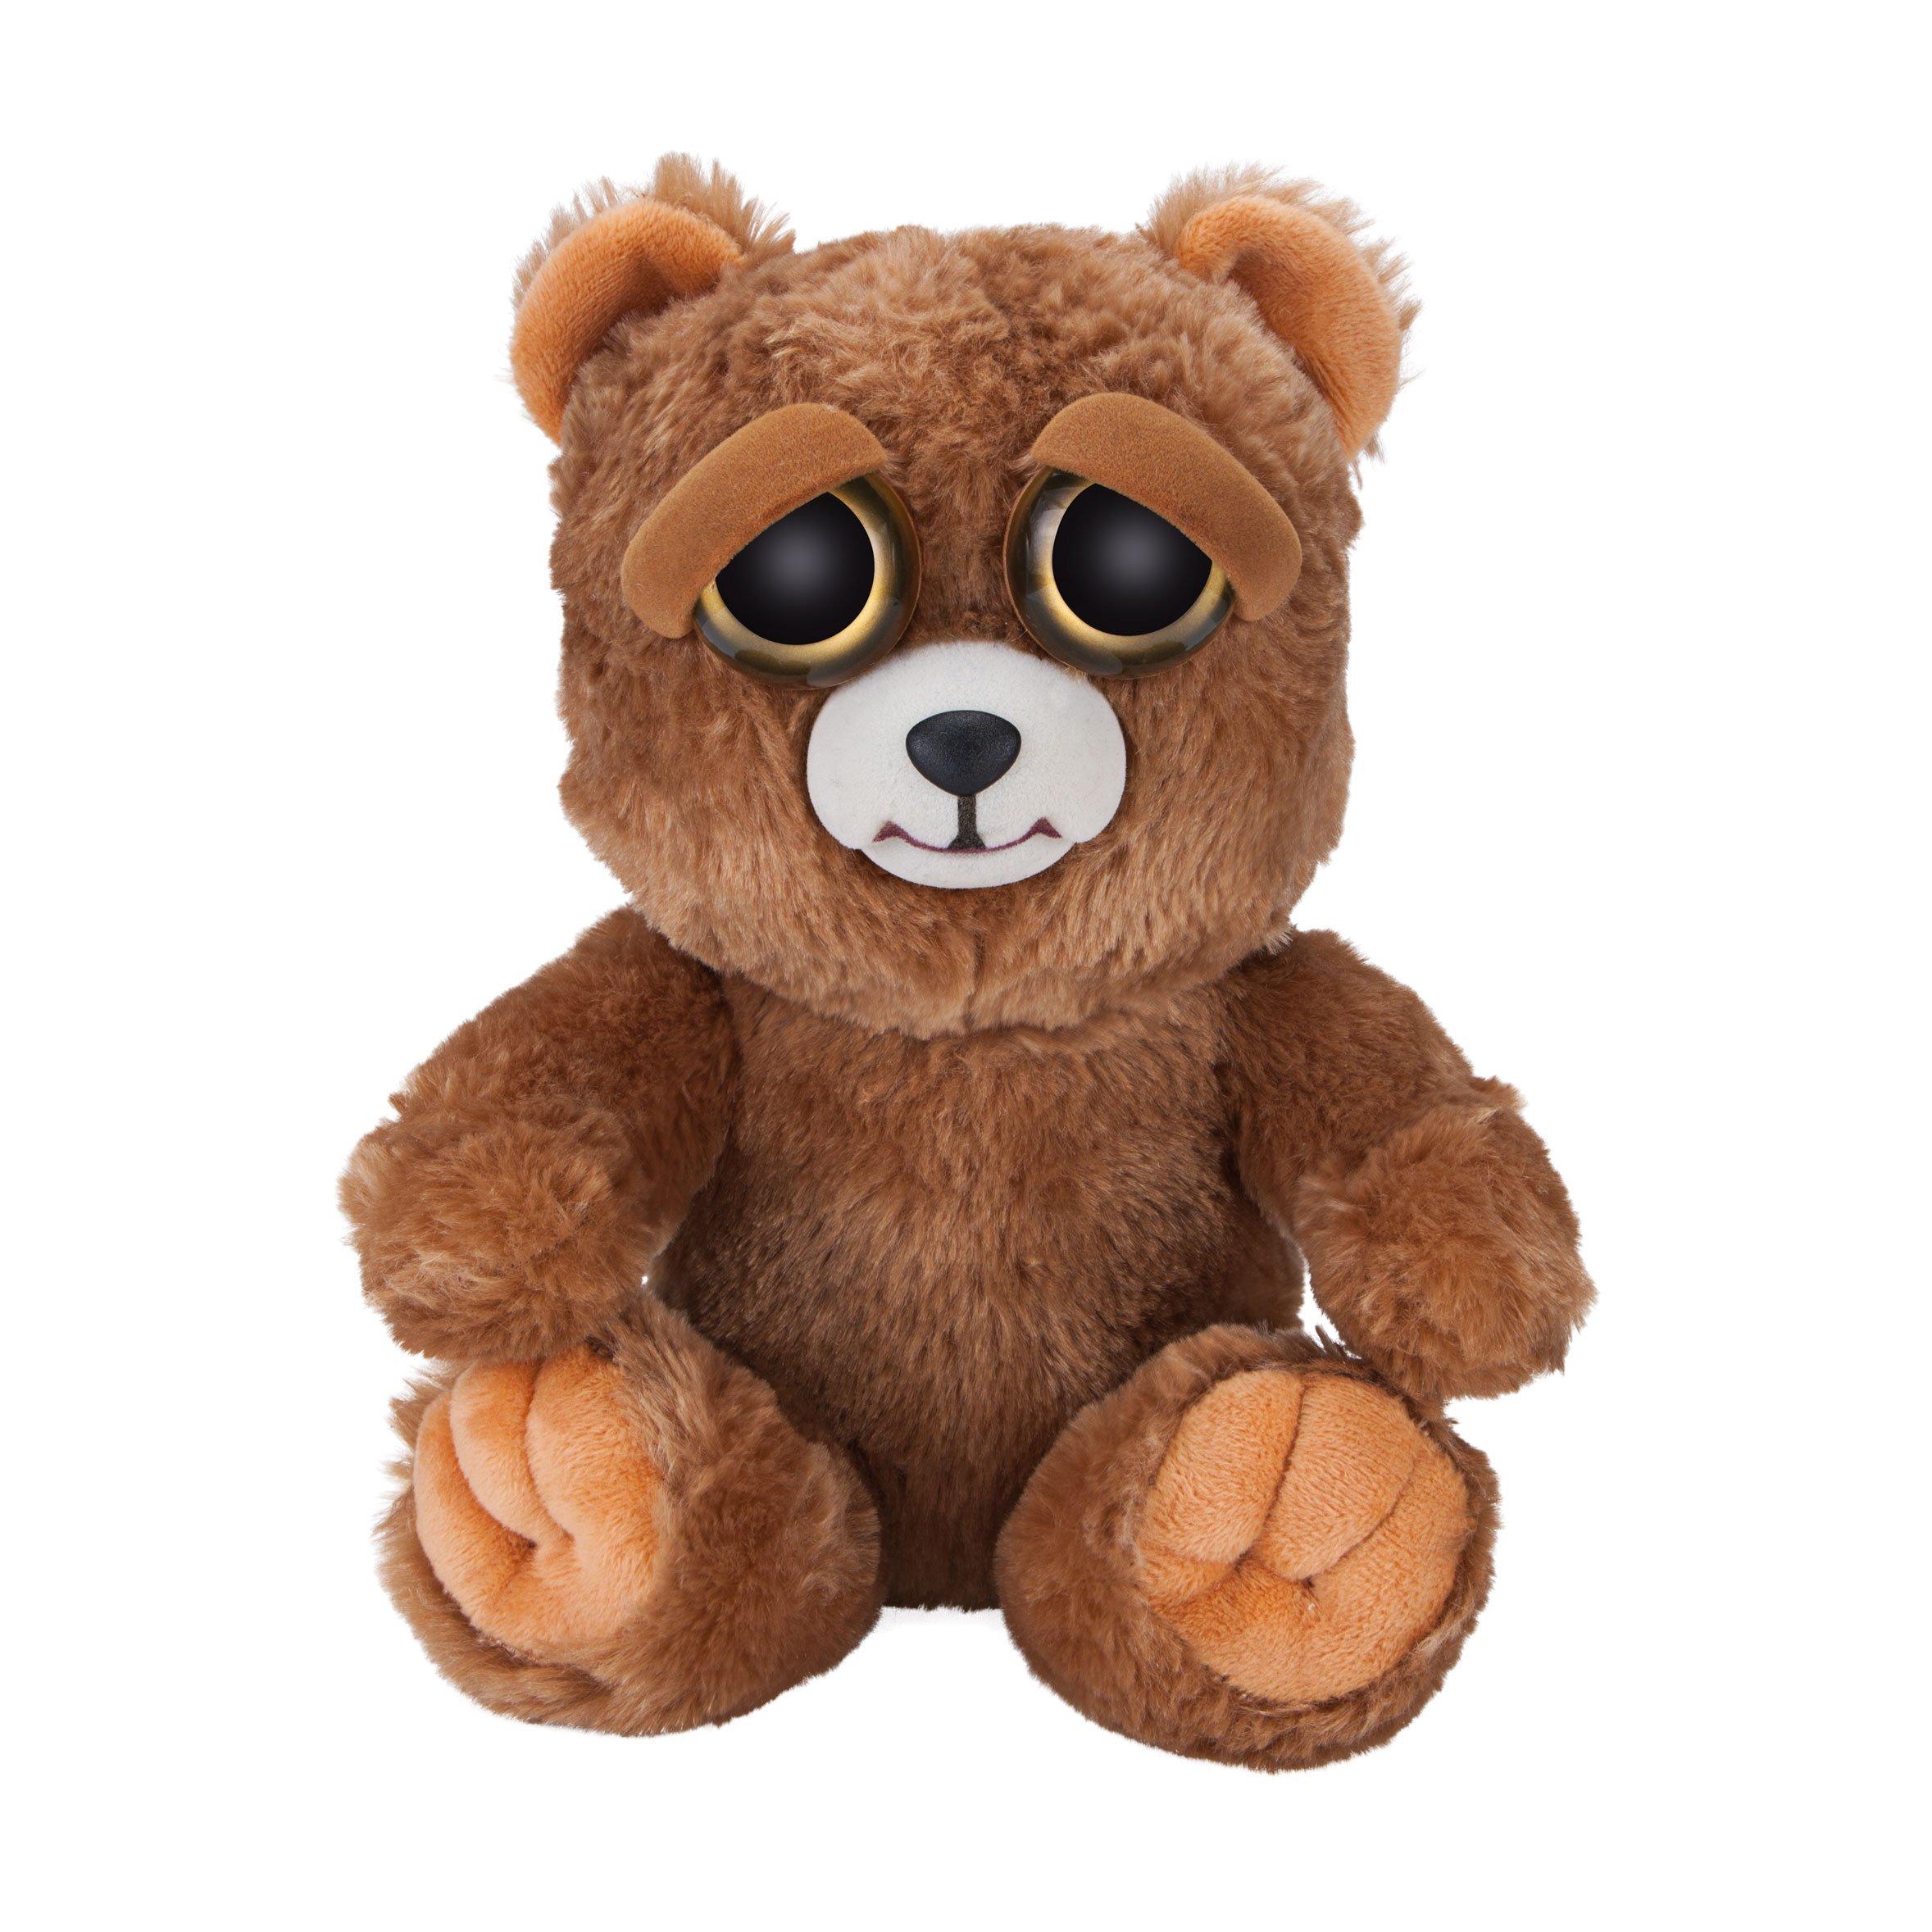 Feisty pets. Интерактивные игрушки бурый медведь. Игрушка коричневый медведь злой. Злая игрушка. Покажи интерактивные игрушки медвежата коричневые для девочек.